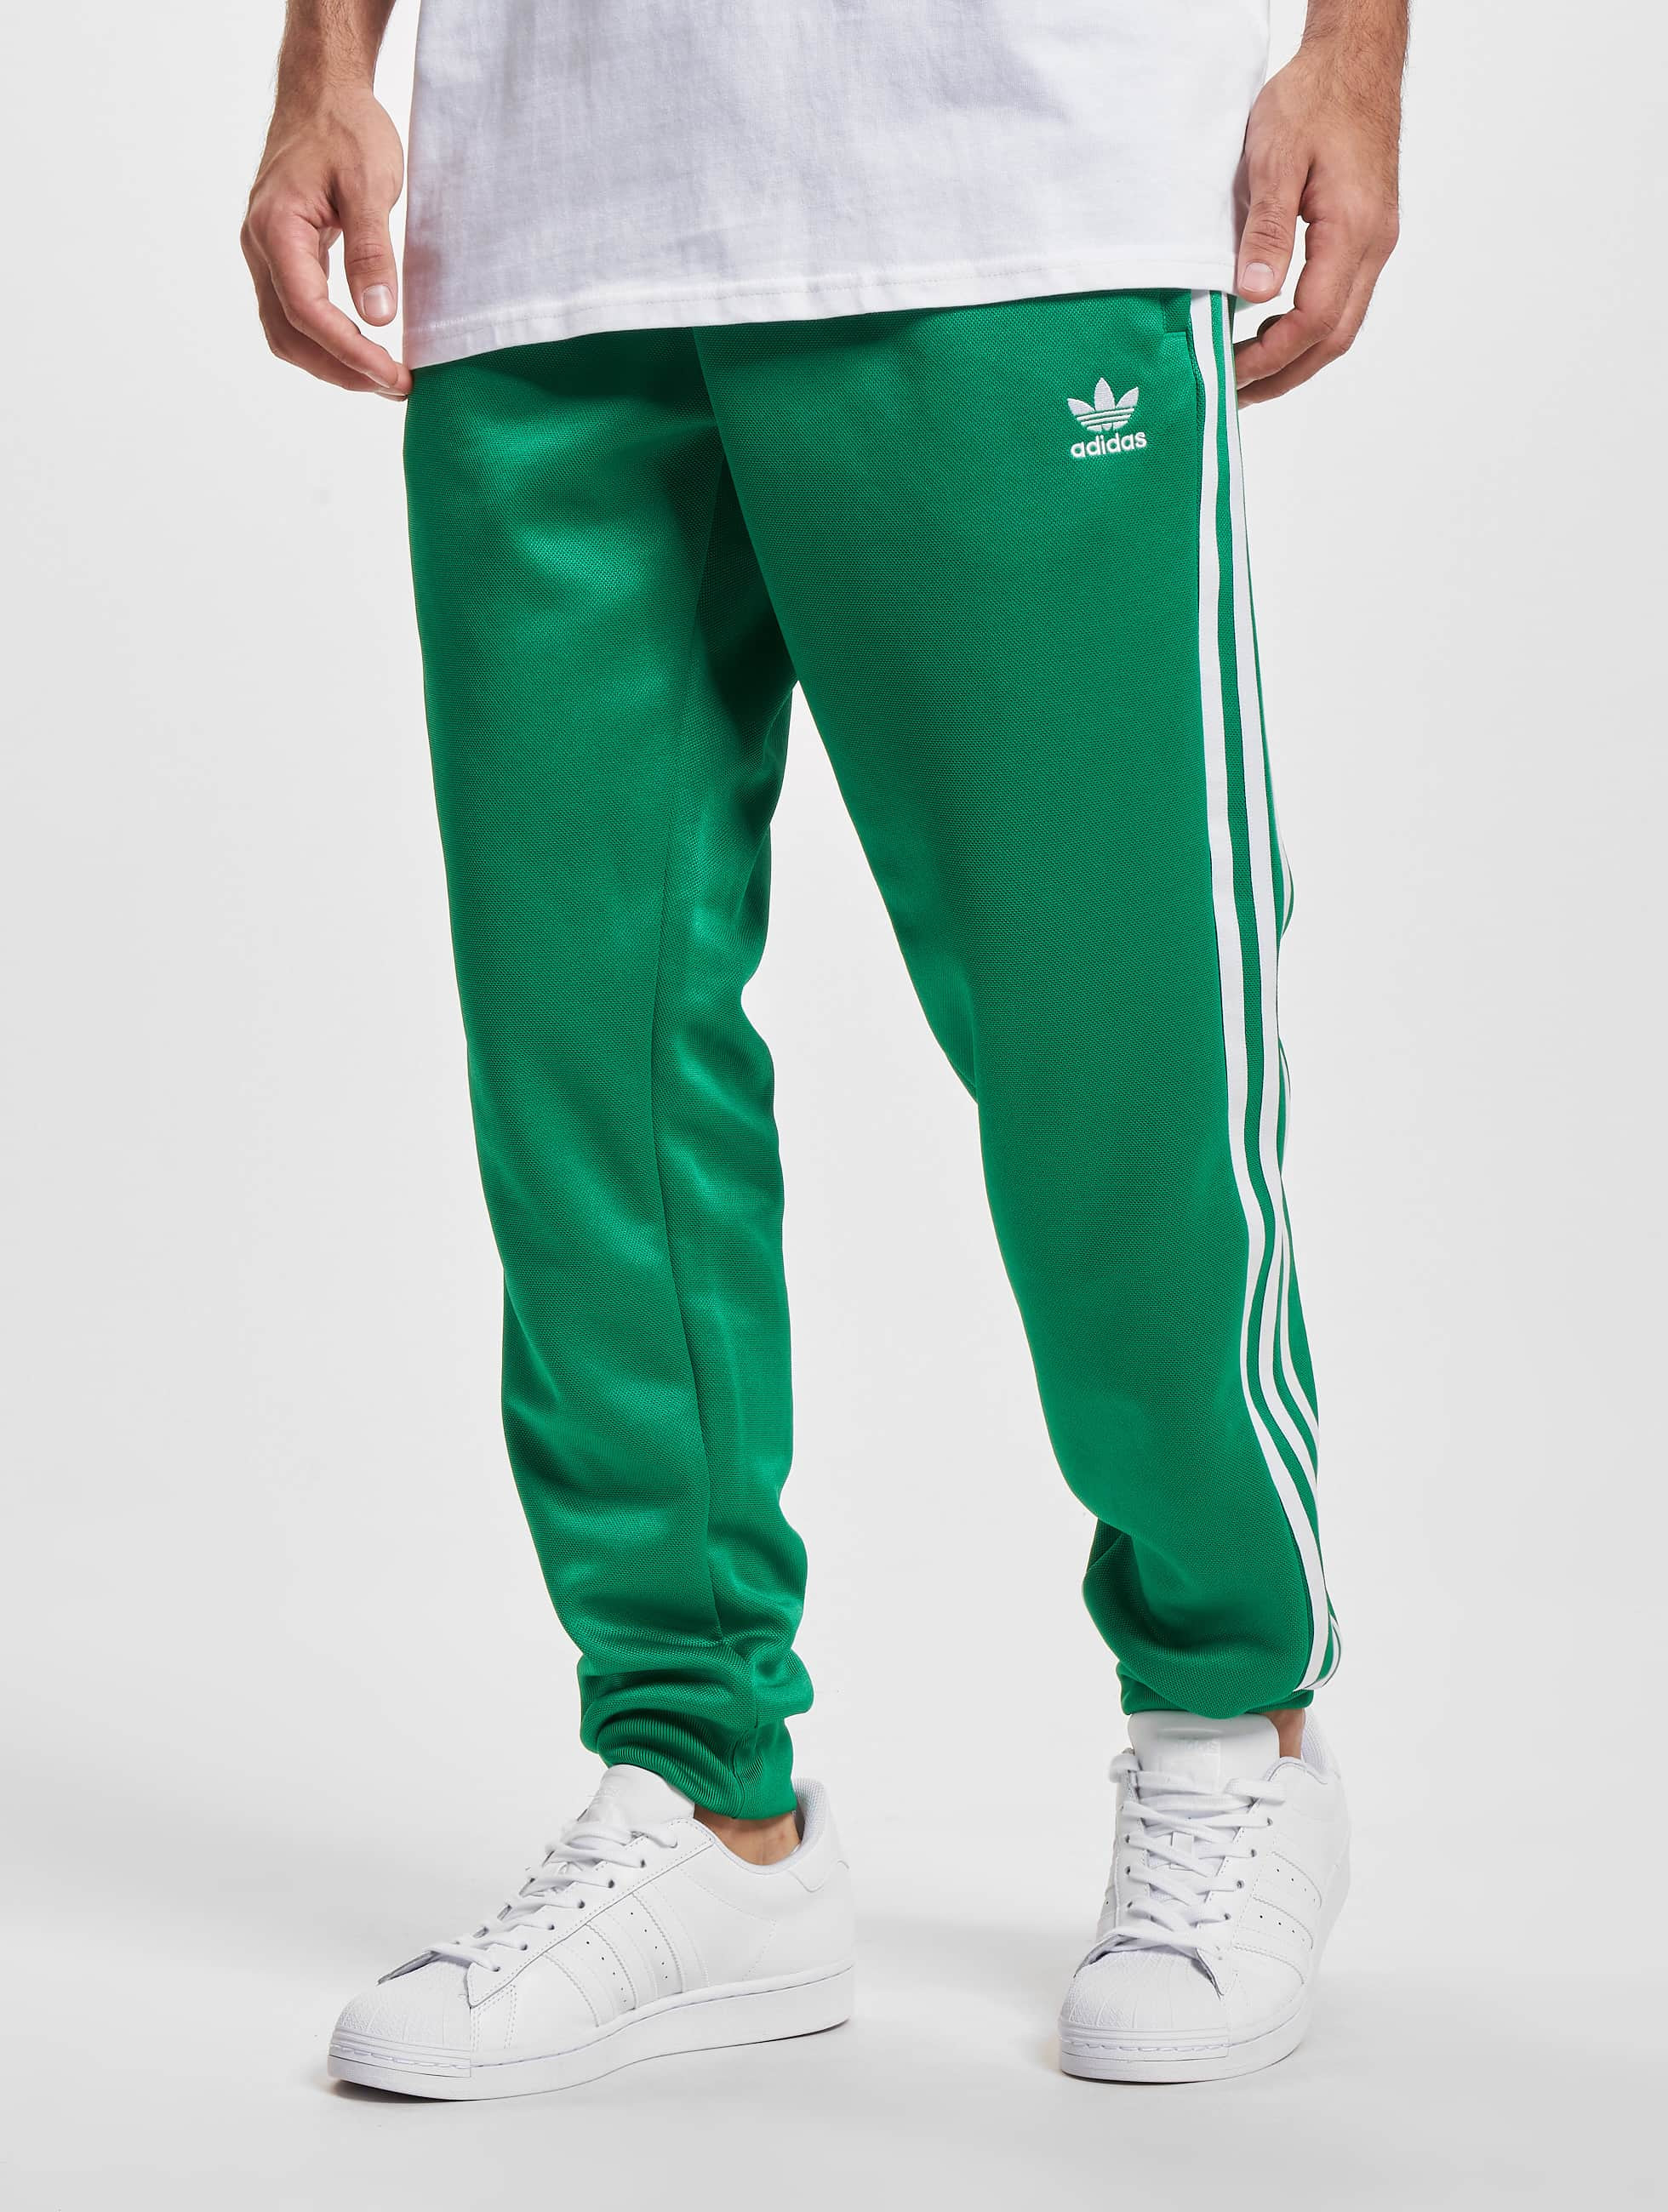 voorjaar overhandigen Makkelijk te gebeuren adidas Originals broek / joggingbroek Cl Sst in groen 1041988